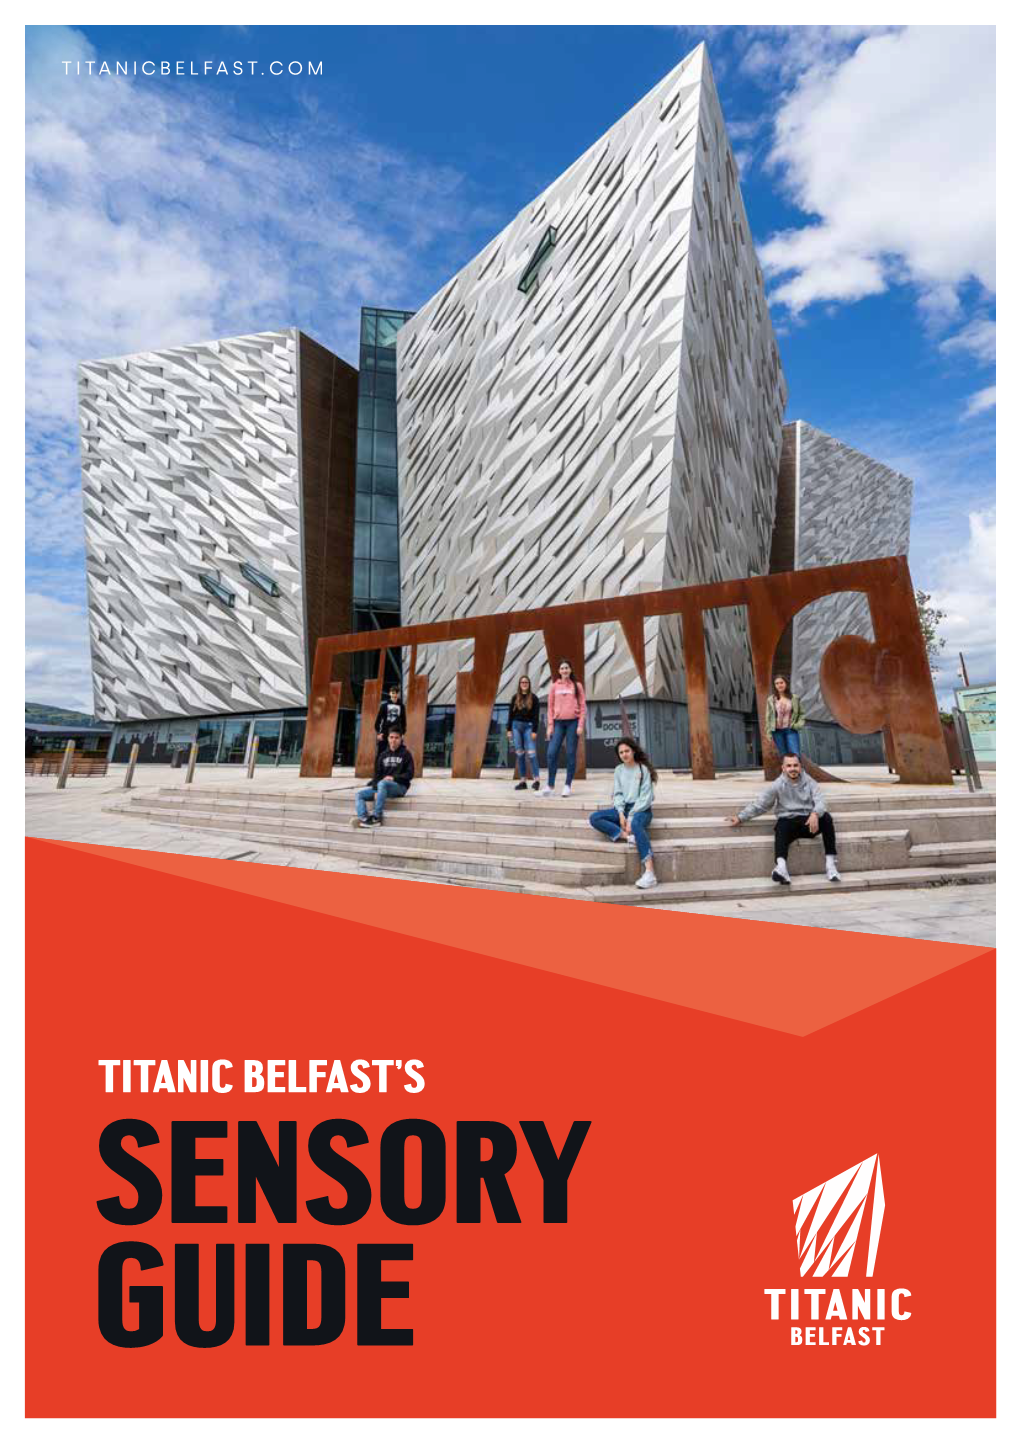 Titanic Belfast's Sensory Guide